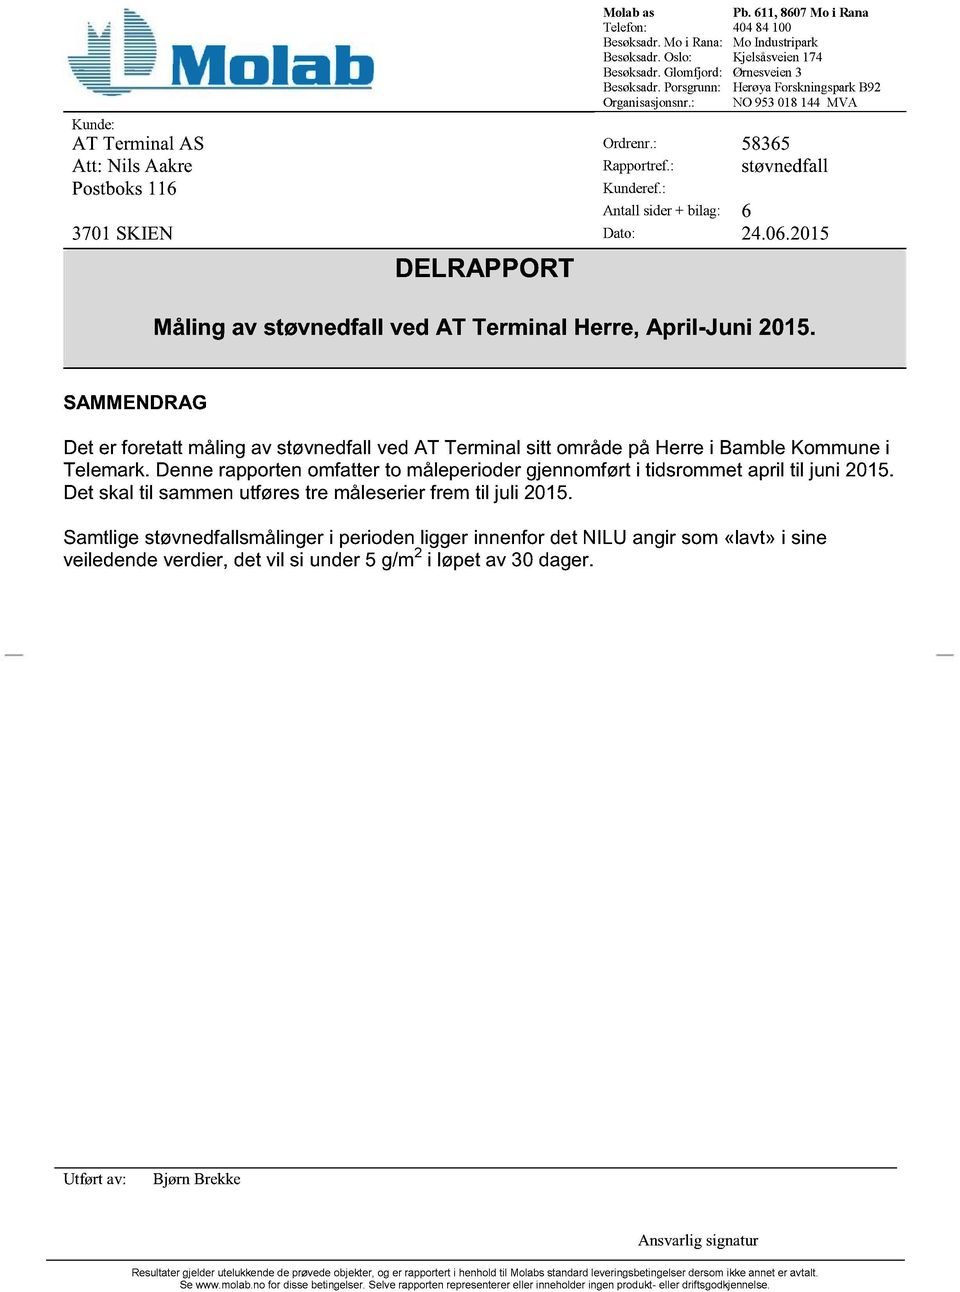 : Antall sider+ bilag: 6 3701SKIEN Dato: 24.06.2015 DELRAPPORT Måling av støvnedfall ved AT Terminal Herre, April -Juni 2015.